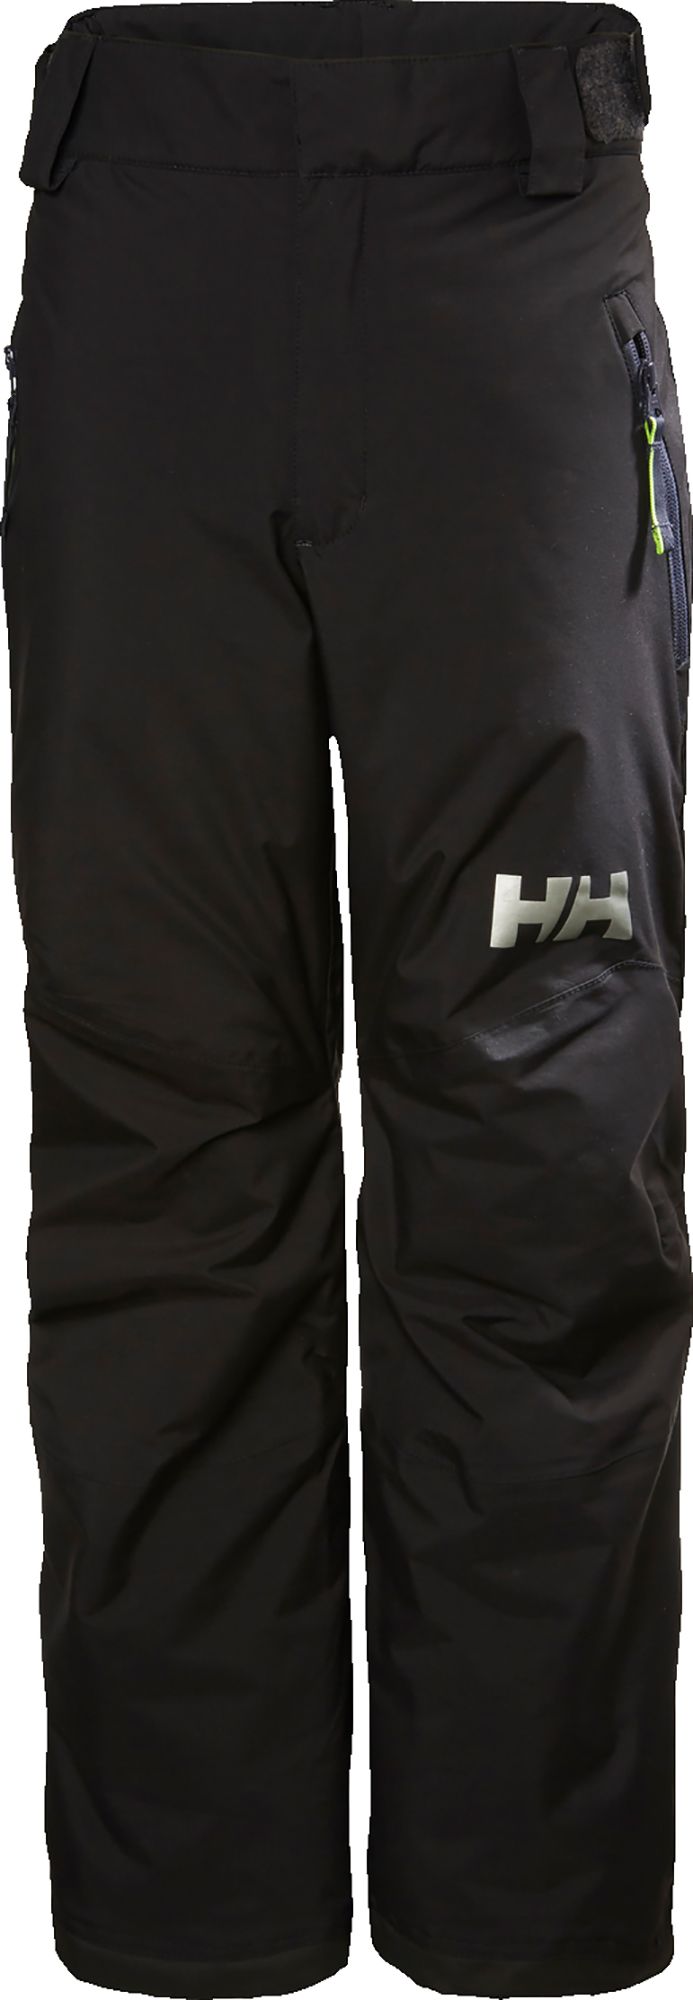 Photos - Ski Wear Helly Hansen Junior's Legendary Pants, Boys', Size 14, Black 21HLYYYLGNDRY 